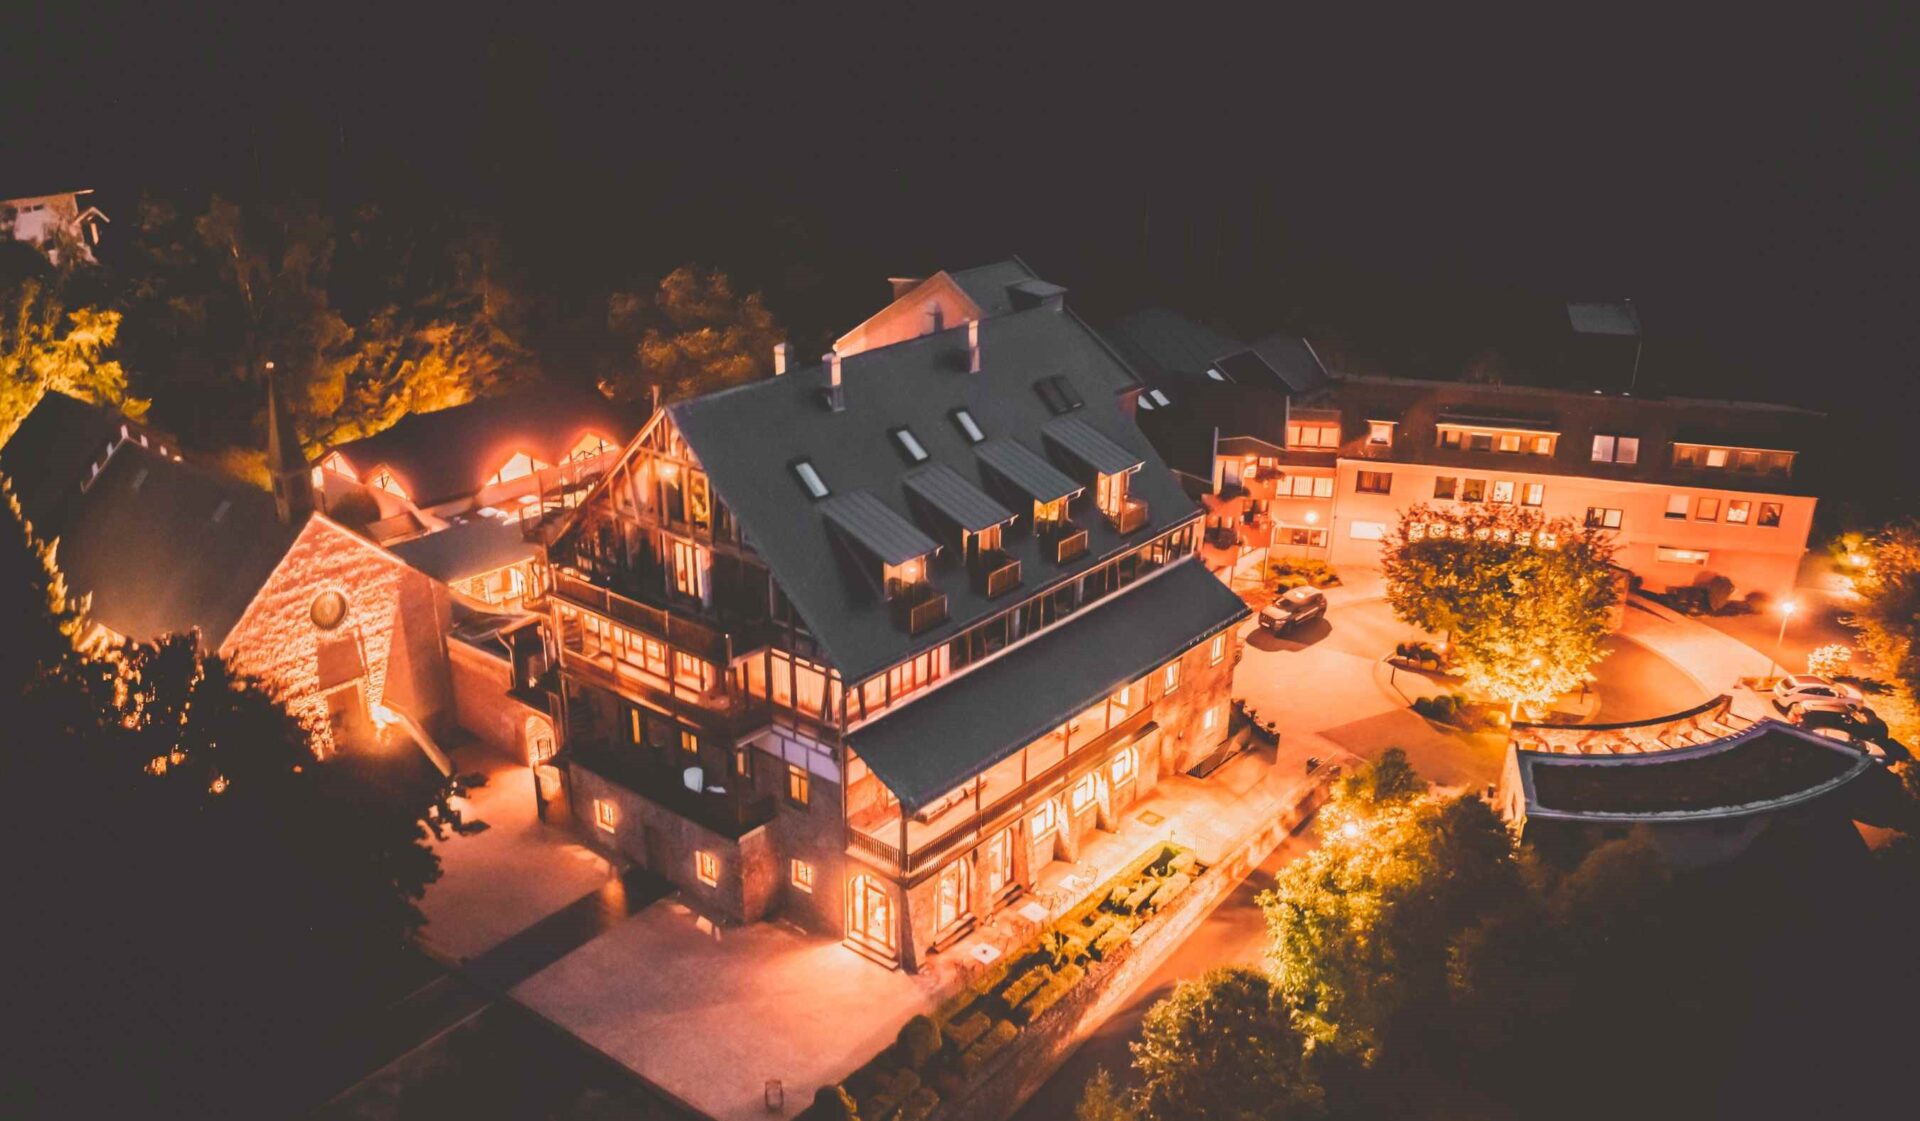 Marienhöh Hideaway & Spa Hotel: eines der schönsten Hotels am Nationalpark Hunsrück und der Moselregion Foto: Invite Group